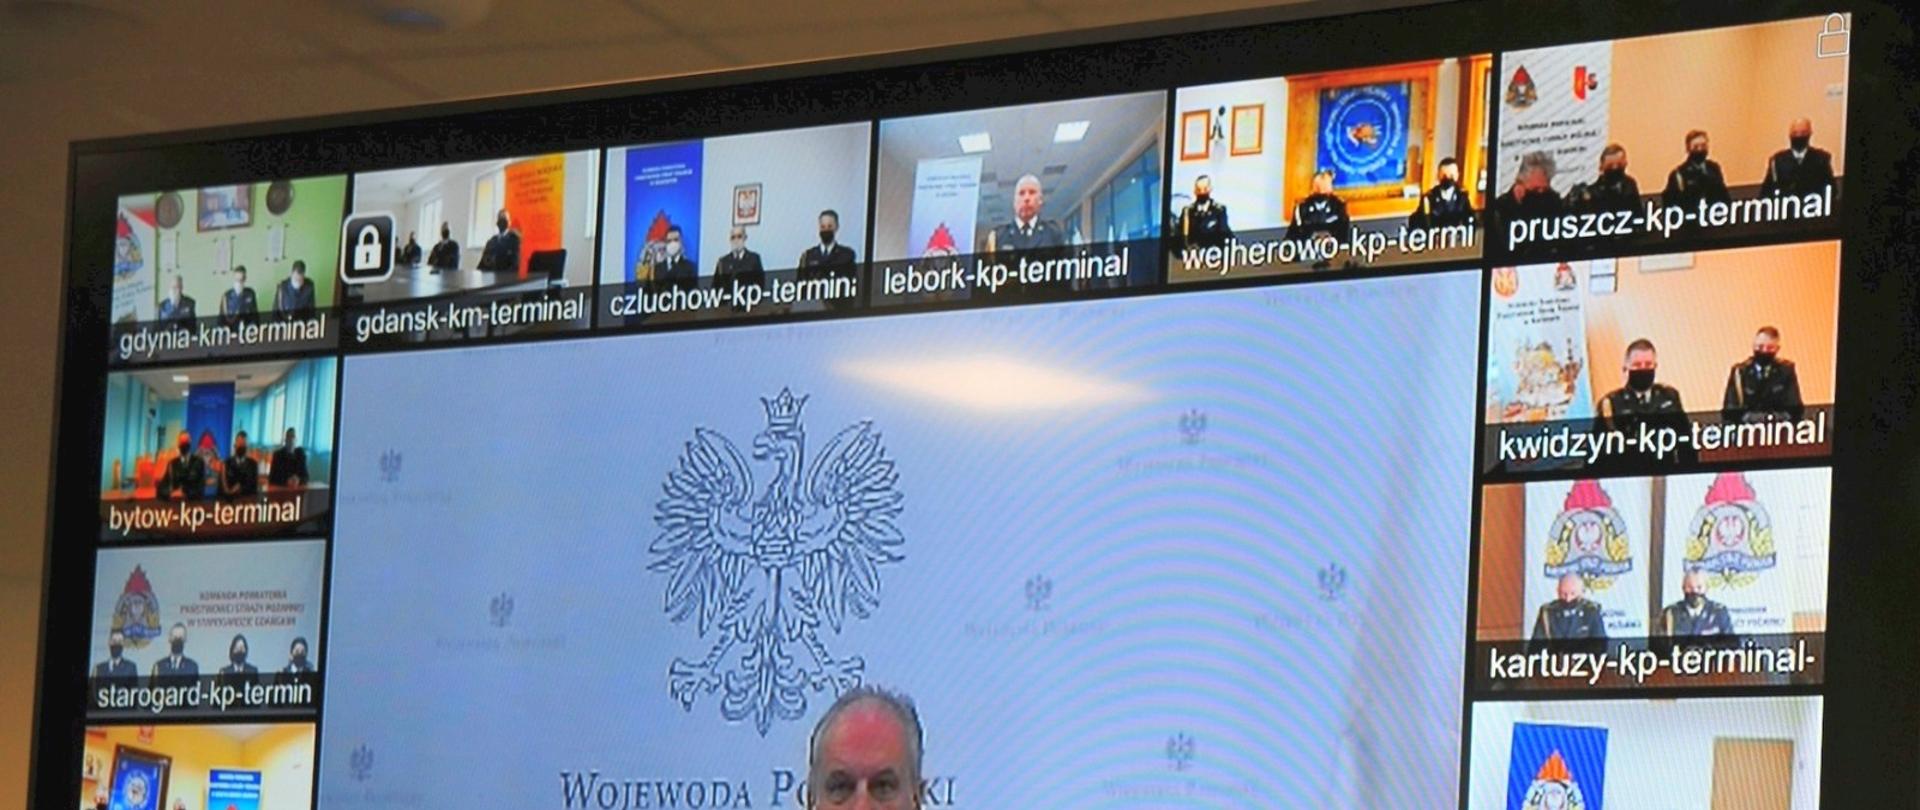 Zdjęcie przedstawia zrzut ekranu podczas wideokonferencji. W oknie głównym Wojewoda Pomorski.